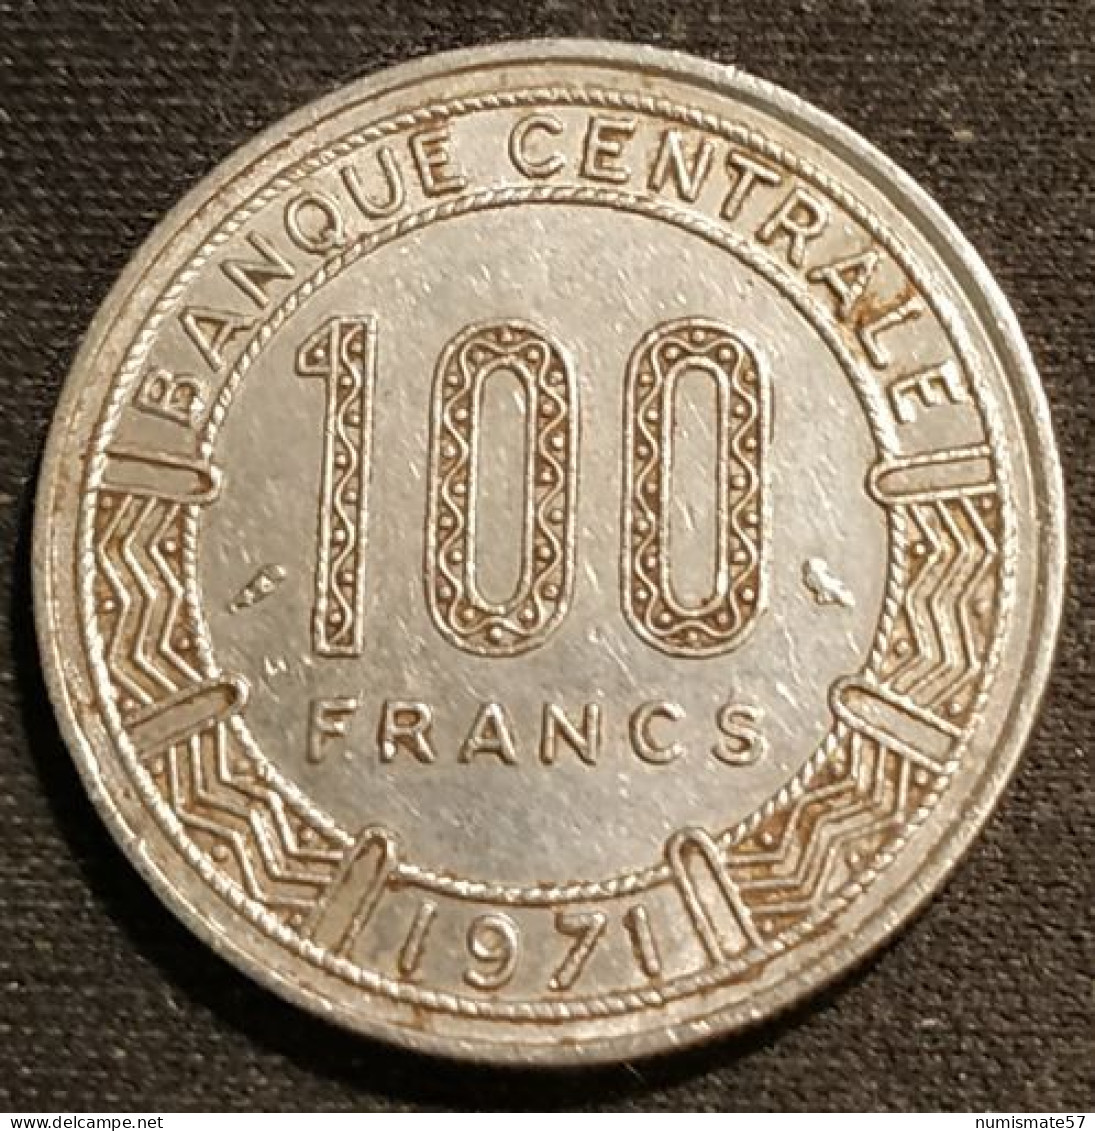 CAMEROUN - 100 FRANCS 1971 - KM 15 - Kamerun